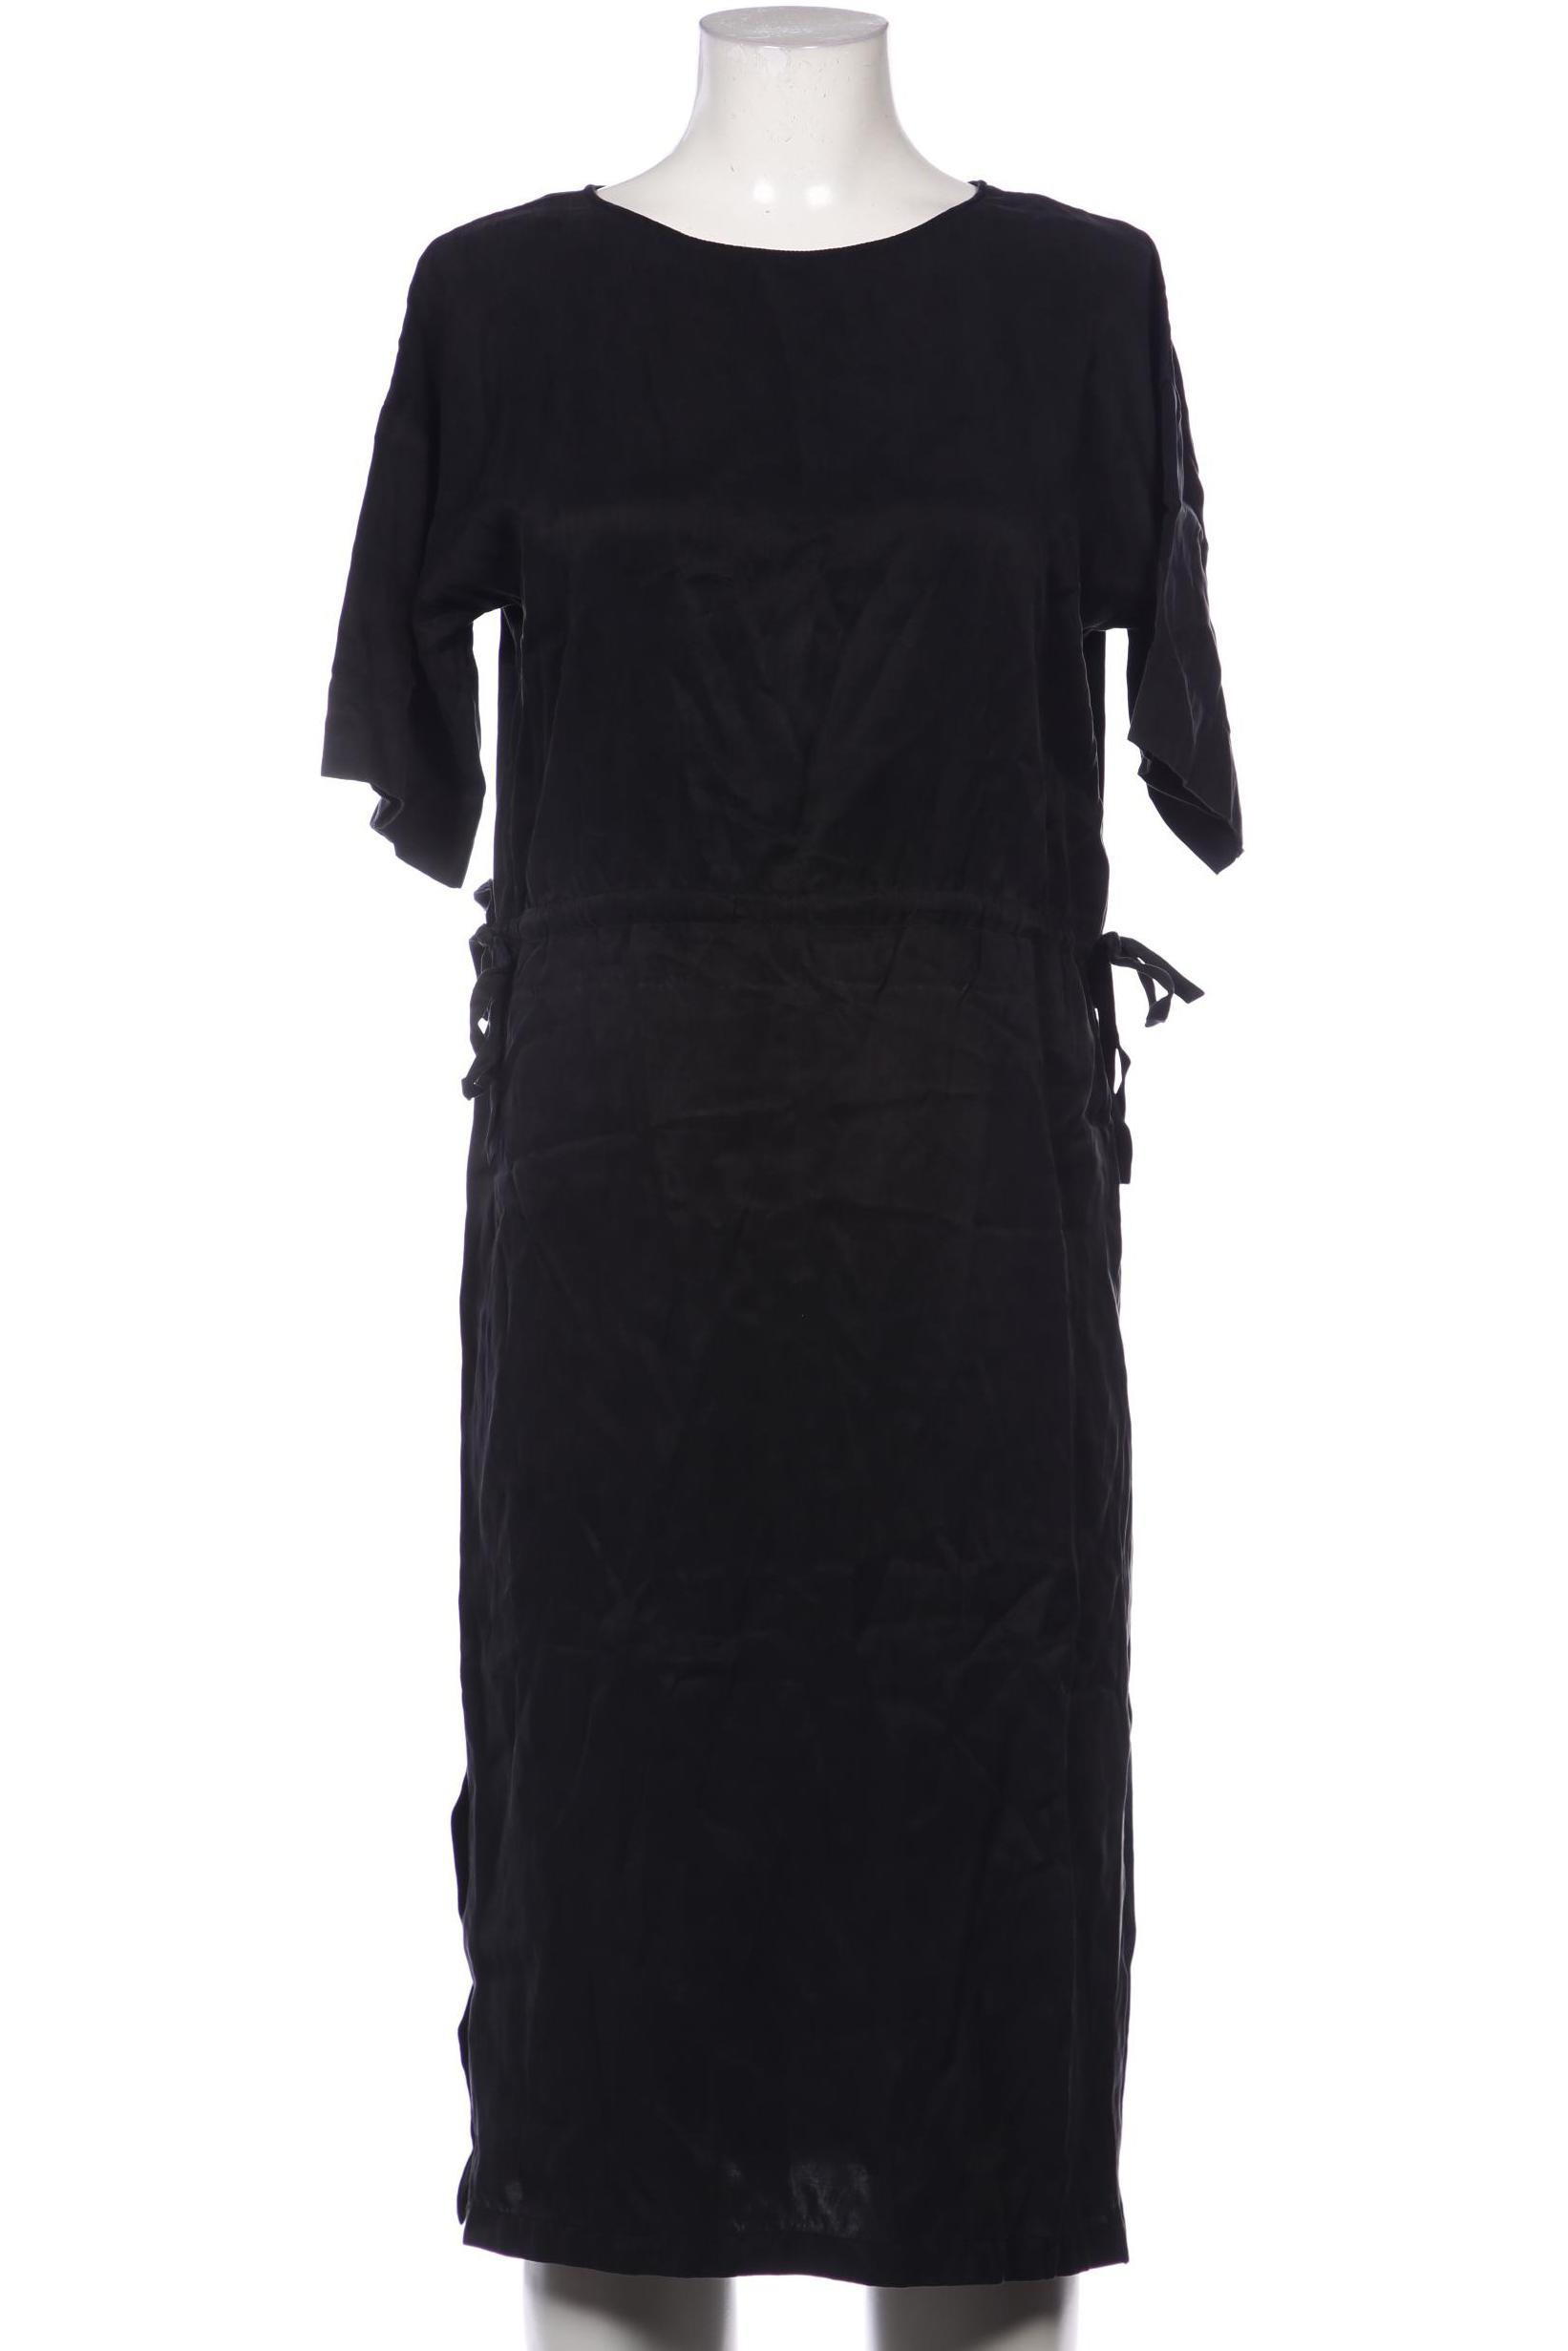 Drykorn Damen Kleid, schwarz von drykorn